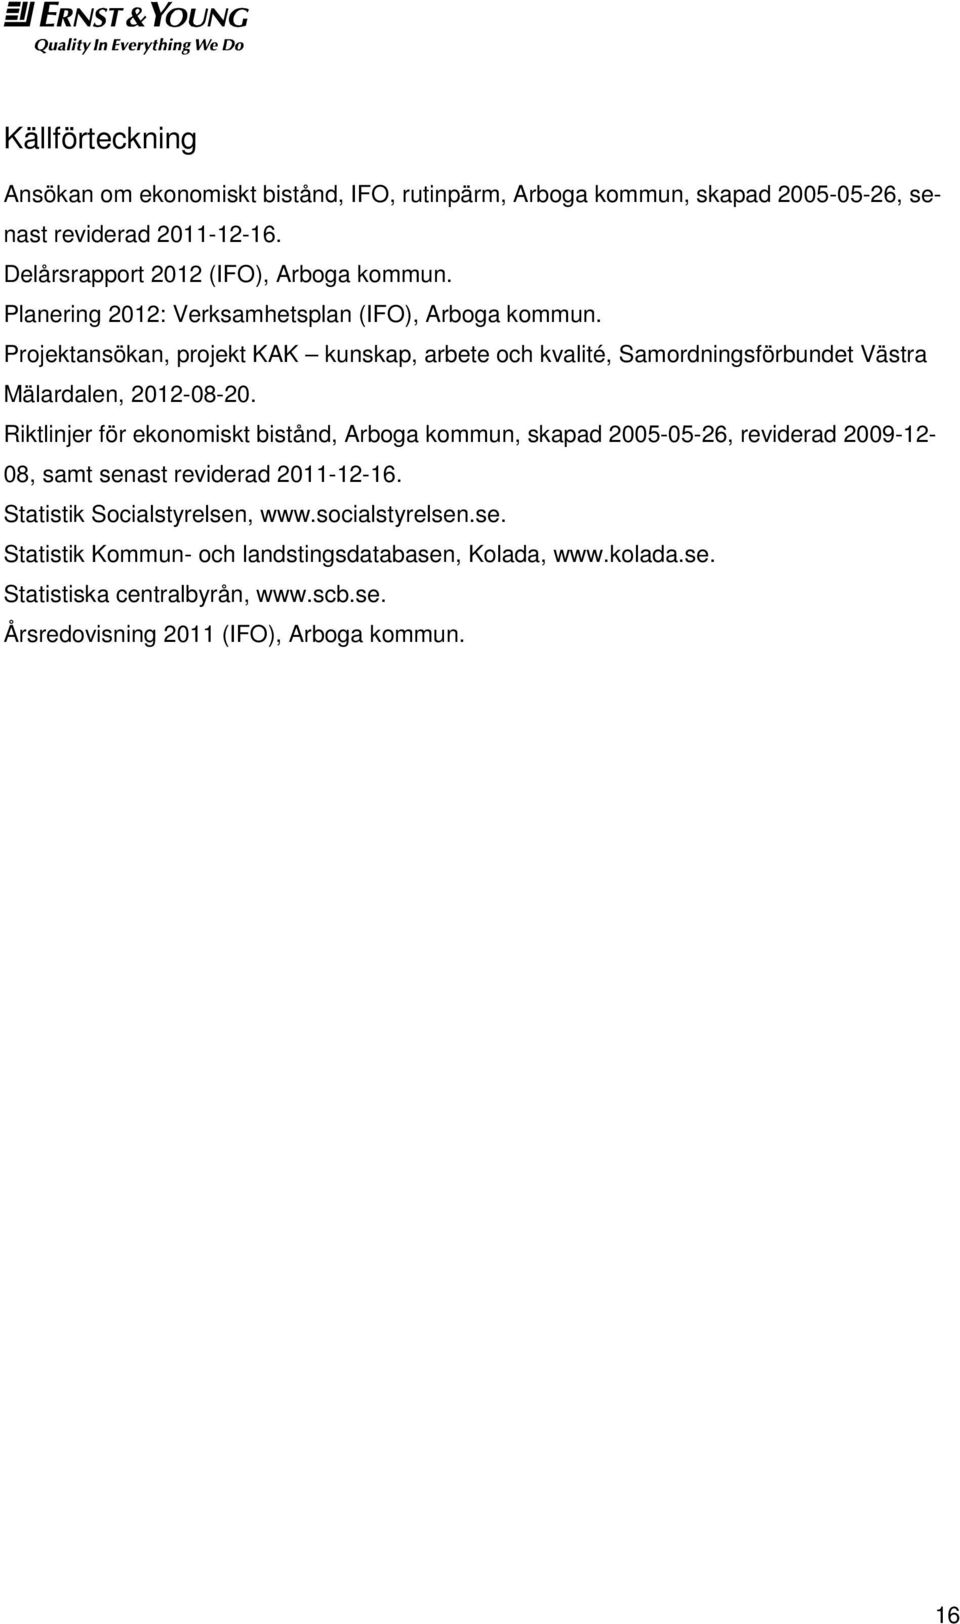 Projektansökan, projekt KAK kunskap, arbete och kvalité, Samordningsförbundet Västra Mälardalen, 2012-08-20.